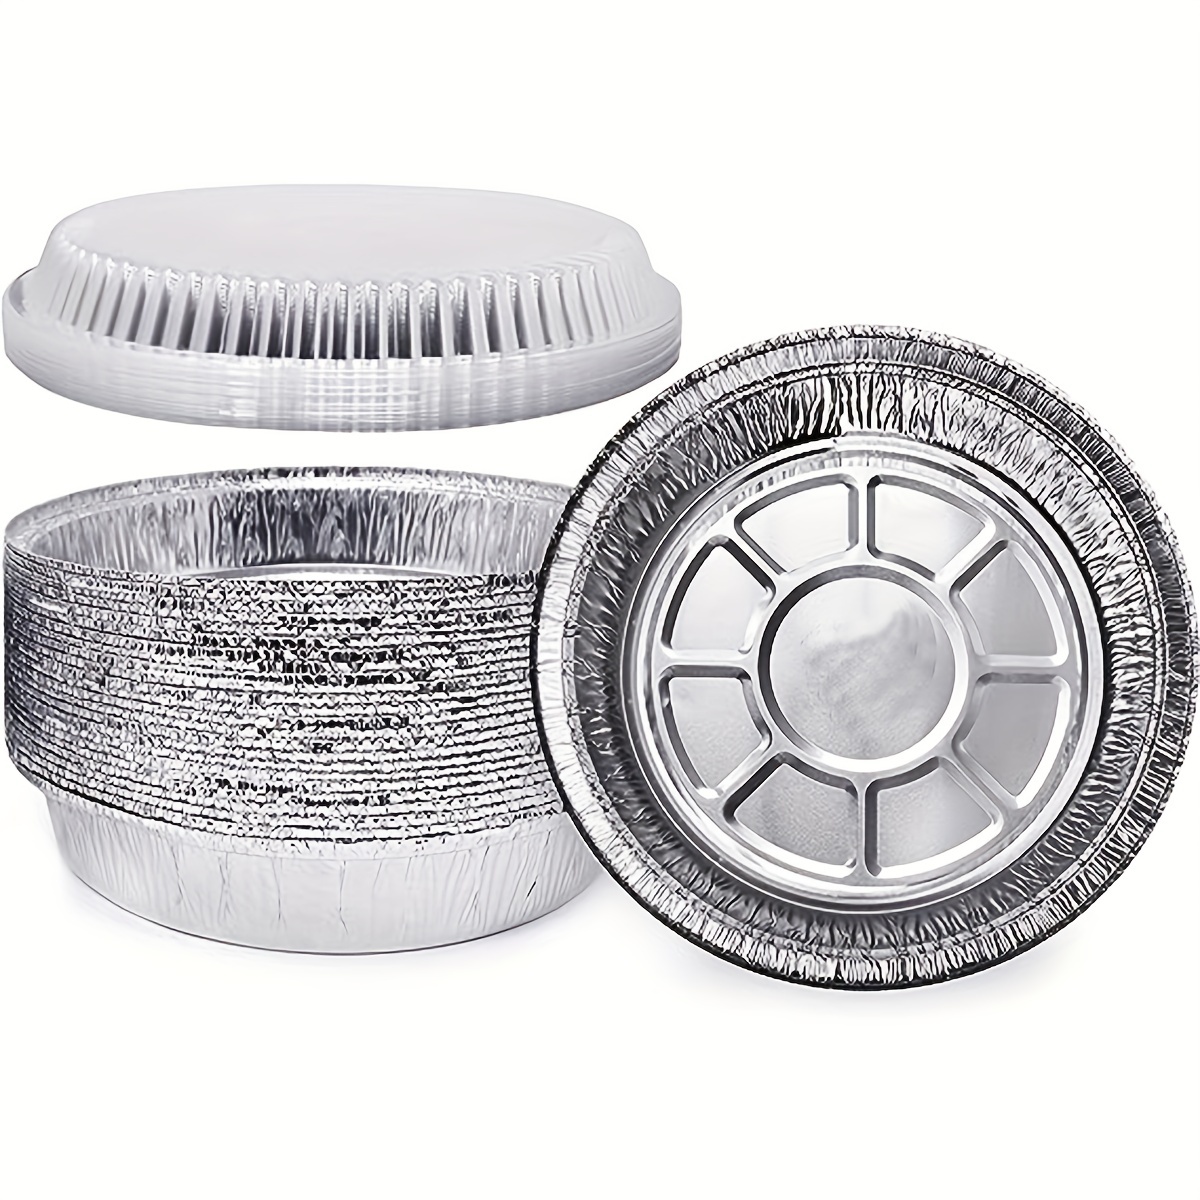 Foil Pans With Aluminum Lids Aluminum Pans With Sealing - Temu